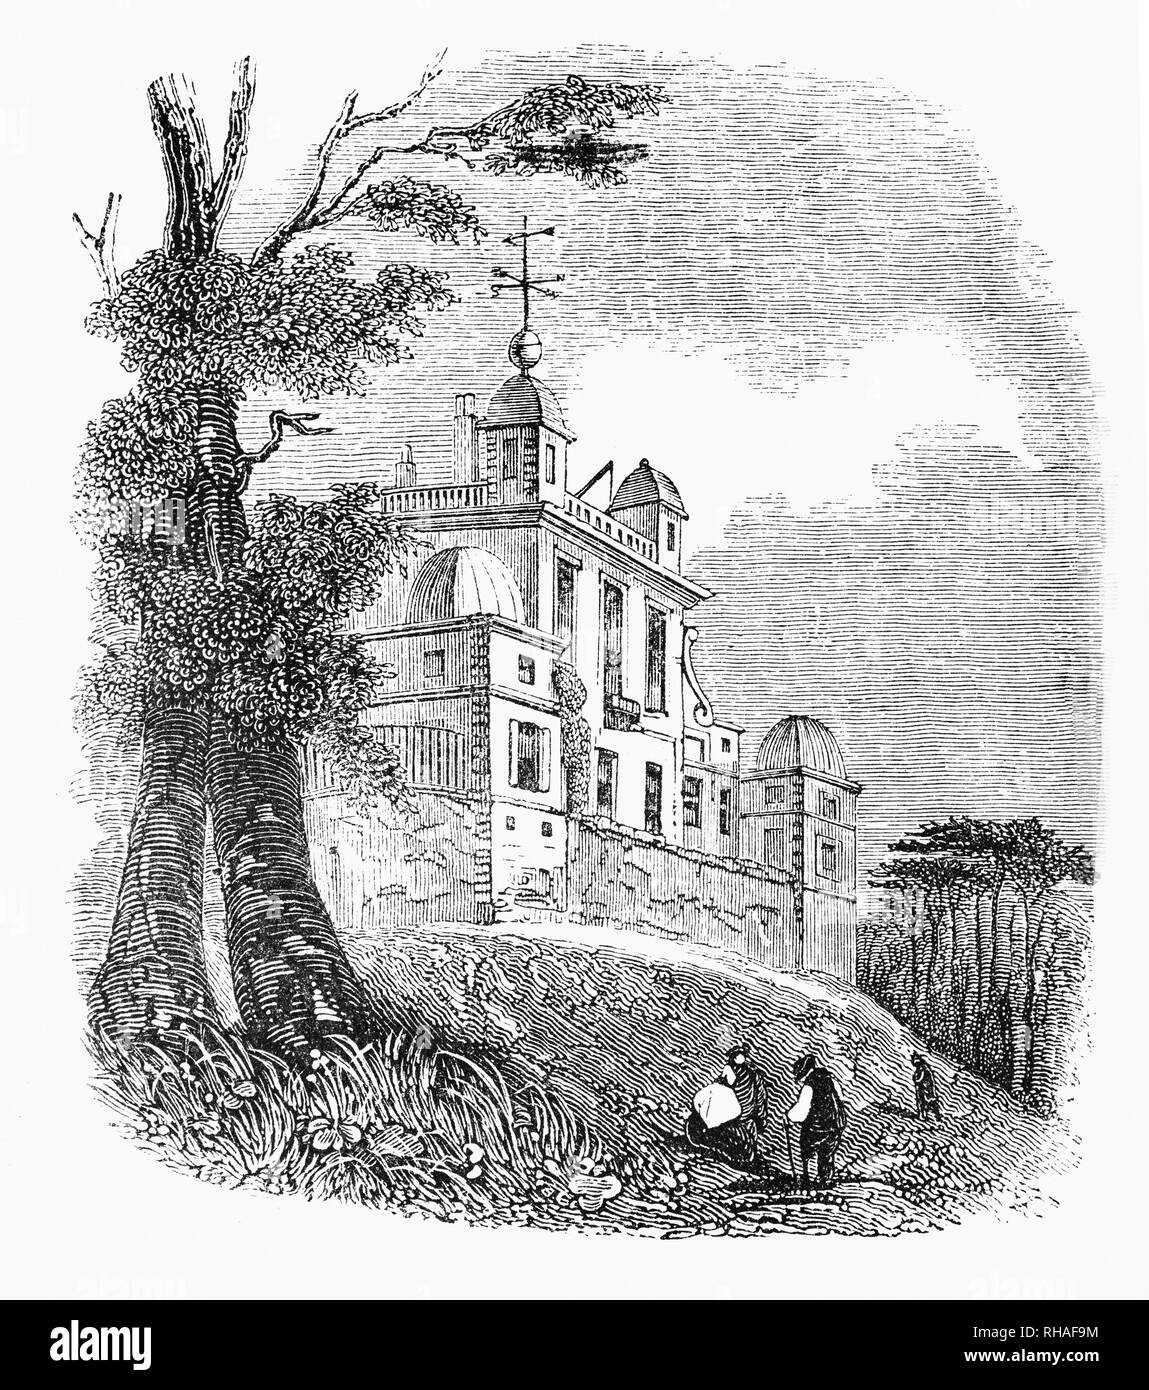 Das Royal Observatory, ist eine Sternwarte auf einem Hügel im Greenwich Park gelegen, mit Blick auf die Themse. Es spielte eine wichtige Rolle in der Geschichte der Astronomie und Navigation und ist am besten für die Tatsache, dass der Nullmeridian durchläuft, und damit seinen Namen gab, Greenwich Mean Time bekannt. Die Sternwarte wurde im Jahre 1675 von König Karl II. in Auftrag gegeben, auf einer Website, die von Sir Christopher Wren. Damals schuf der König auch die Stellung der Astronom Royal, die Ernennung von John Flamsteed als erster Astronom Royal. Stockfoto